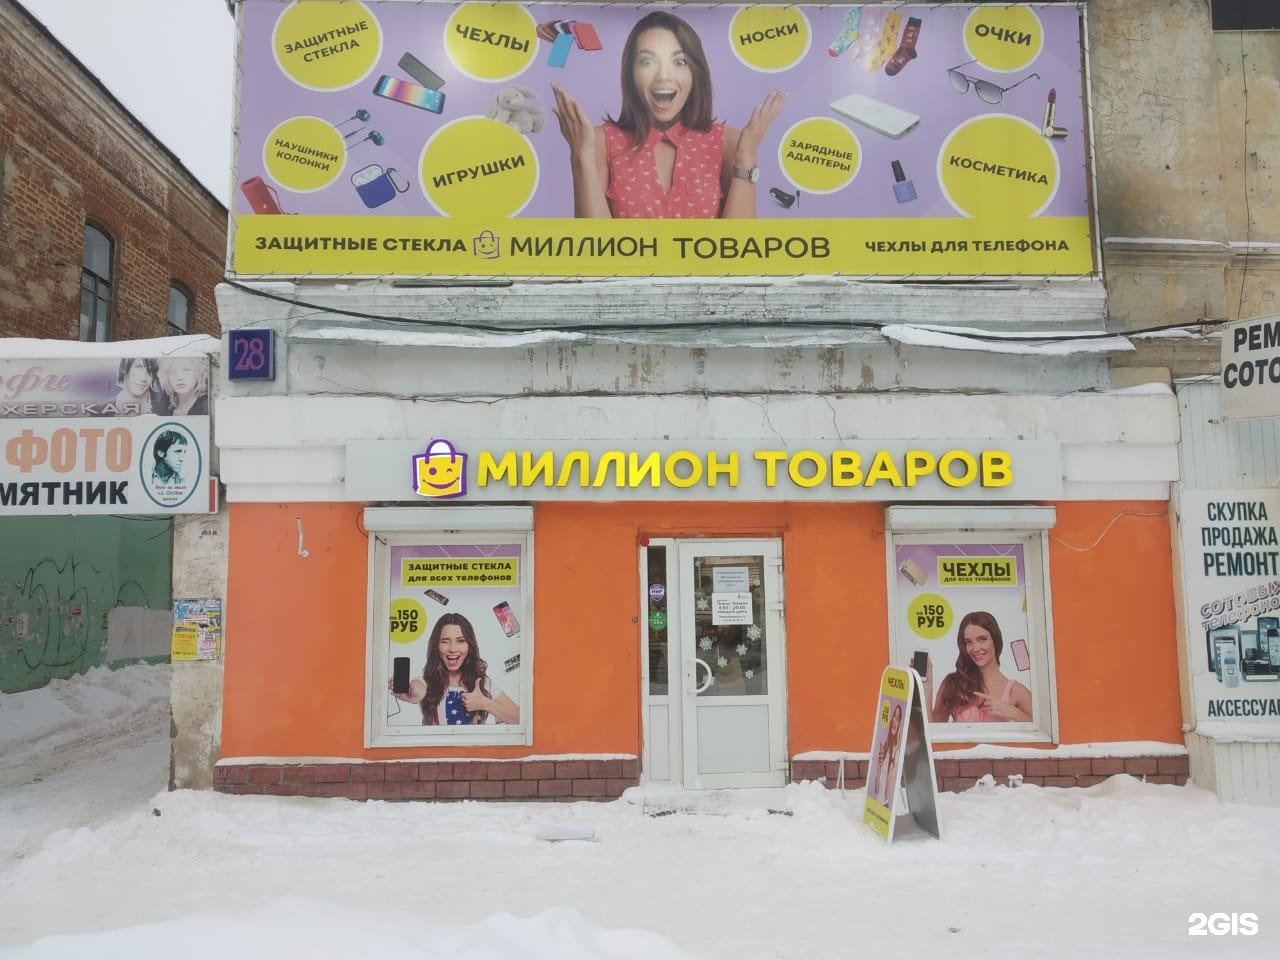 Магазин Около Автовокзала Тамбов